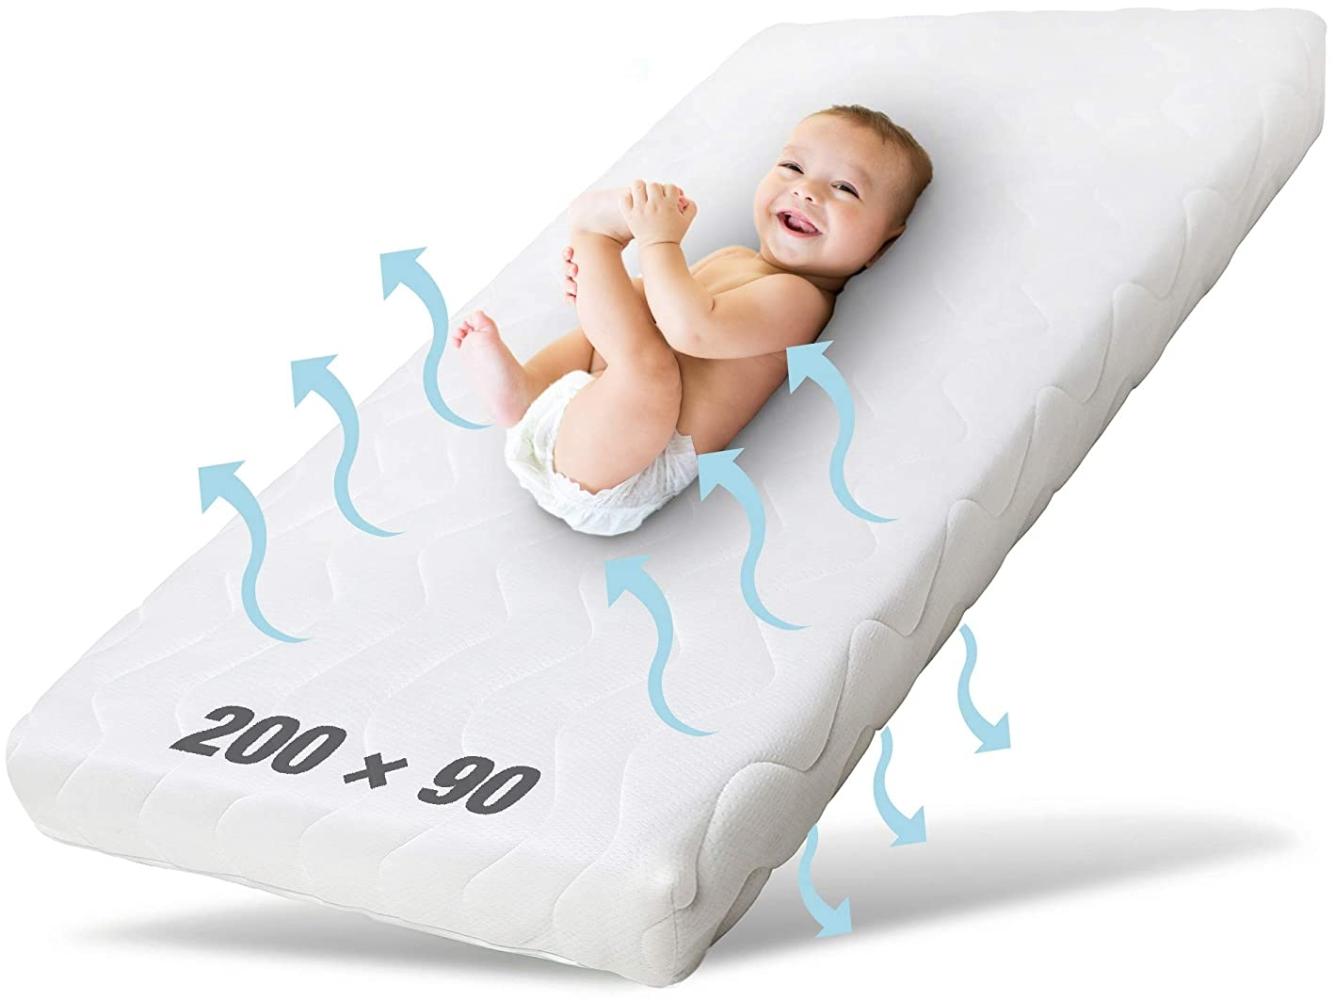 Ehrenkind® Kindermatratze Pur | Baby Matratze 90x200 | Babymatratze 90x200 aus hochwertigem Schaum und Hygienebezug Bild 1